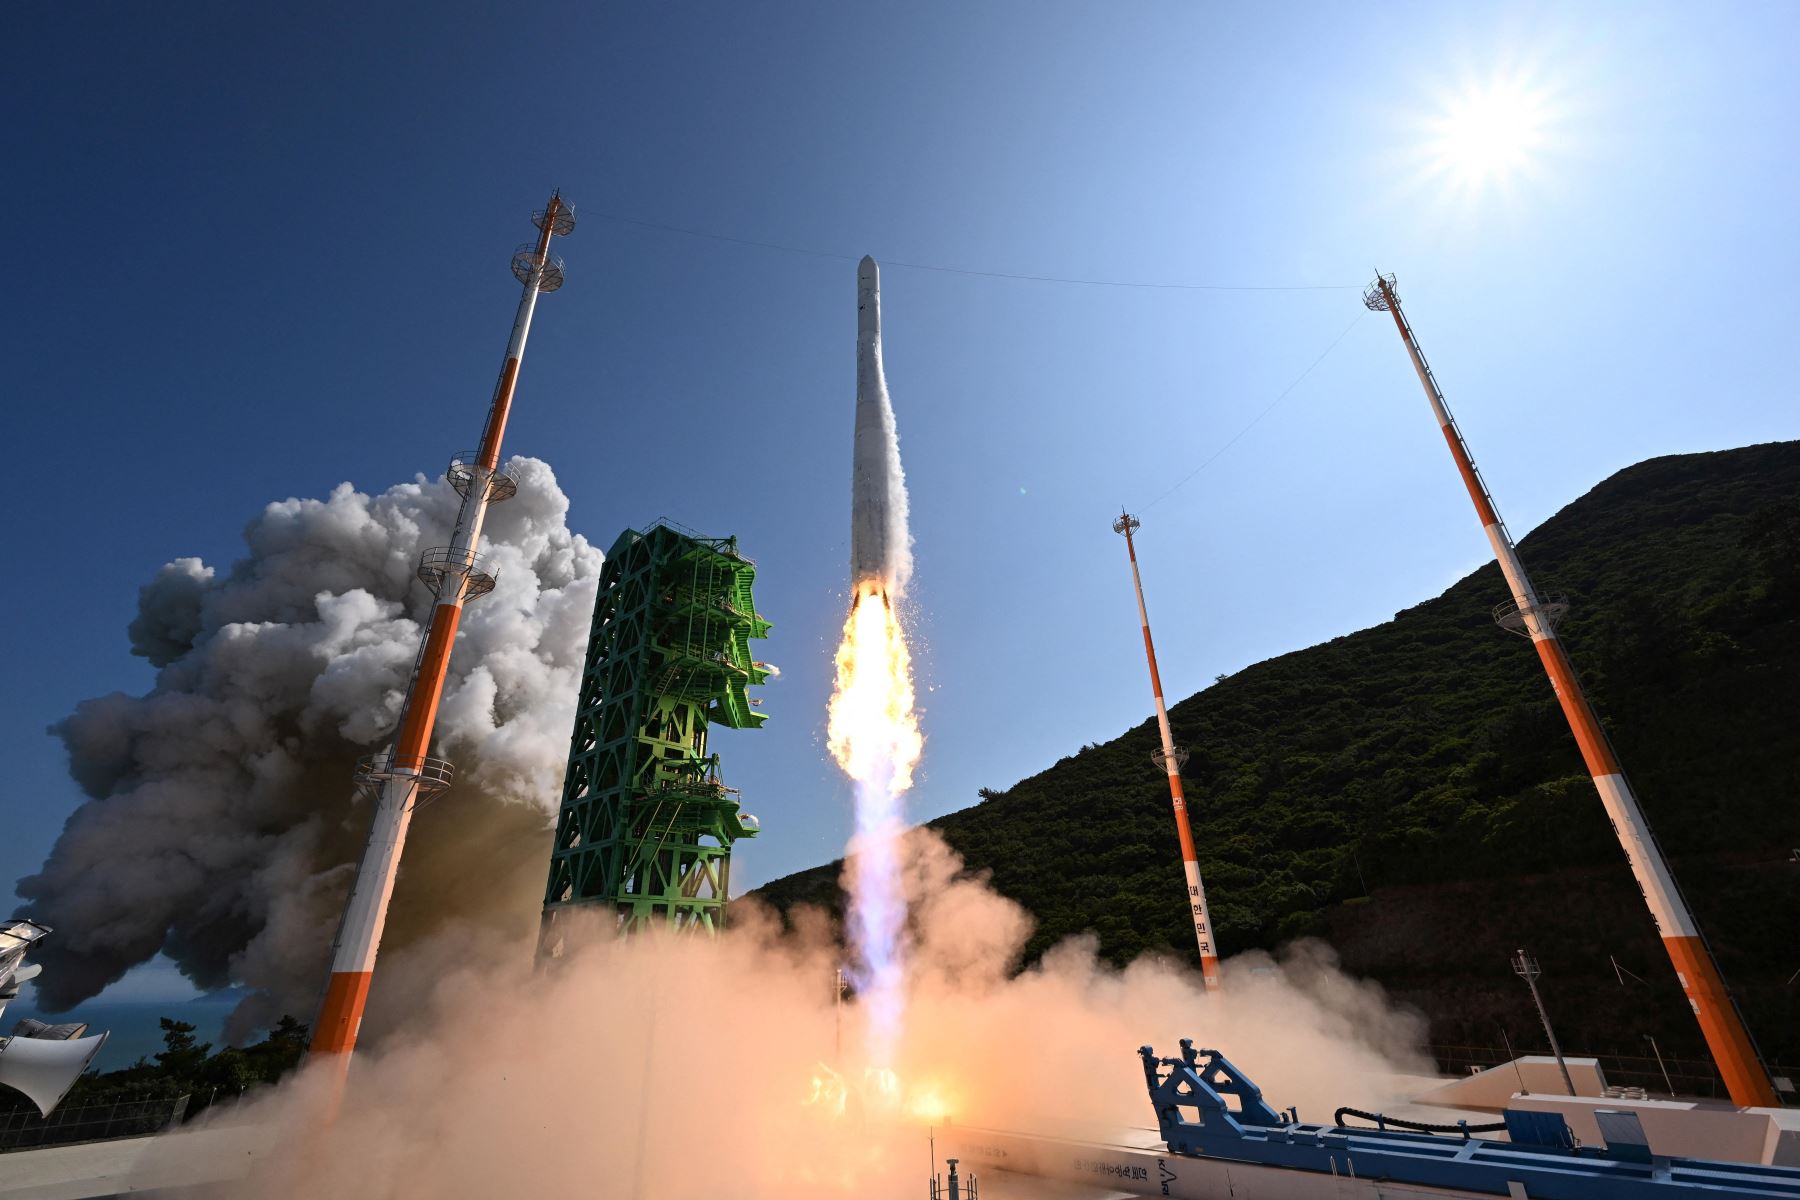 Corea del Sur lanza con éxito cohete Nuri y se suma a la élite aeroespacial